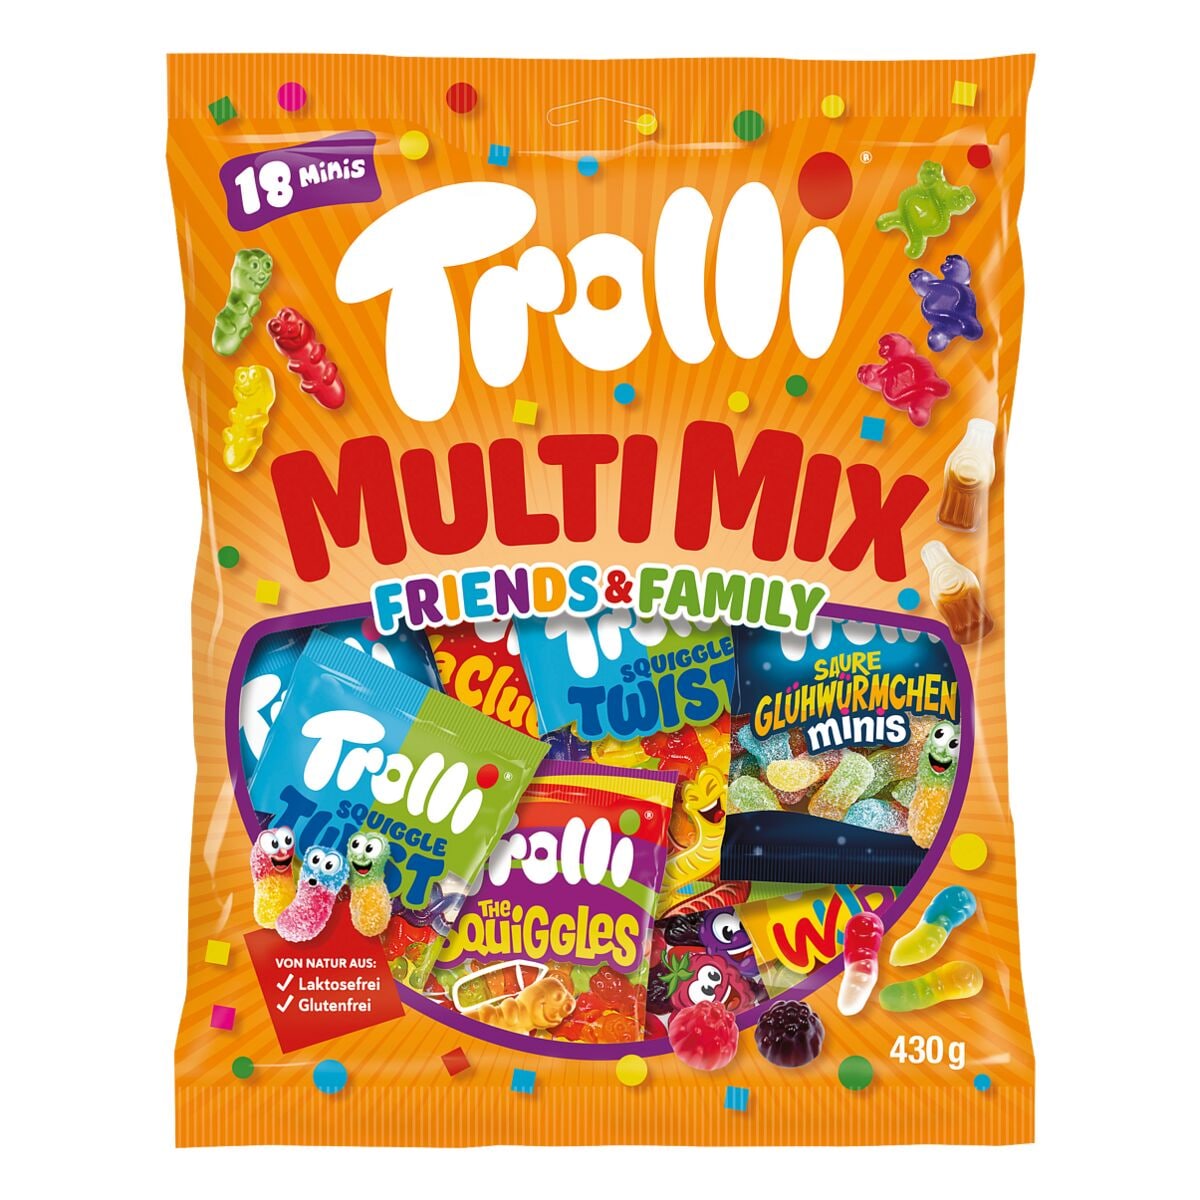 Trolli Fruchtgummi Multi Mix Friends & Family 18 Portionen einzeln verpackt